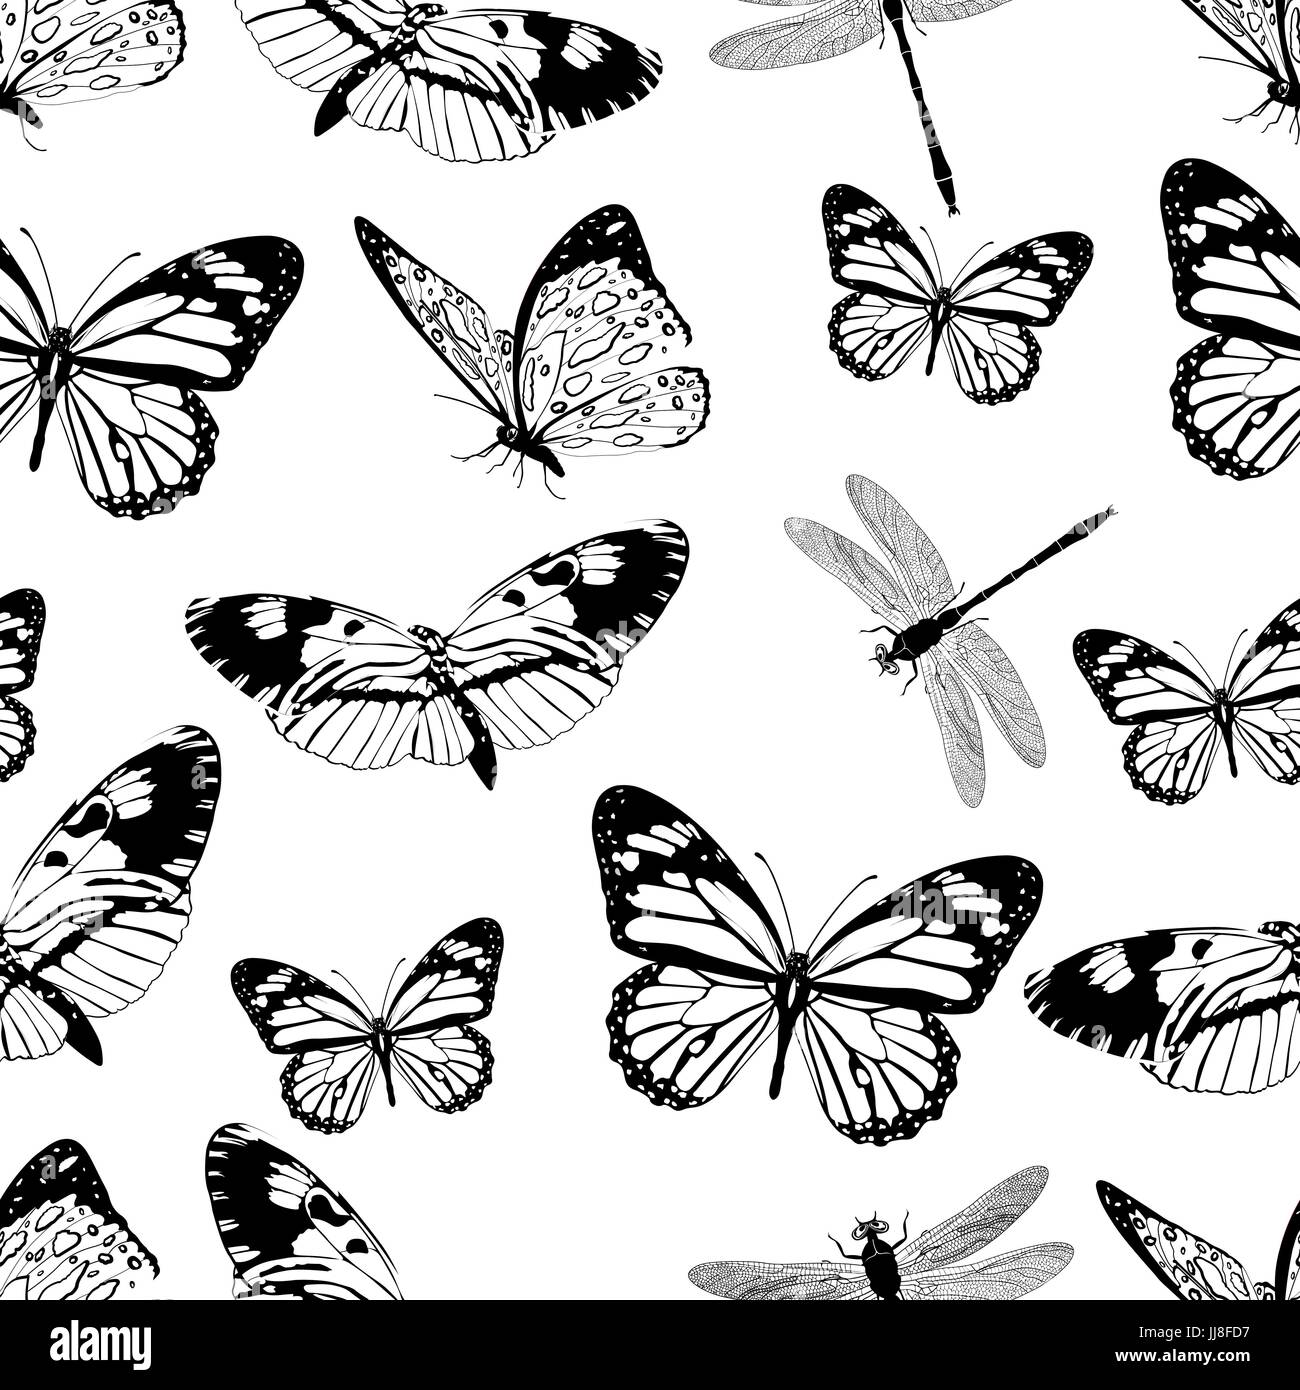 Schmetterlinge und Libellen Musterdesign, monochrome Vektor Hintergrund, Malbuch. Schwarz und weiß verschiedene Insekten auf einem weißen Hintergrund. Für fa Stock Vektor